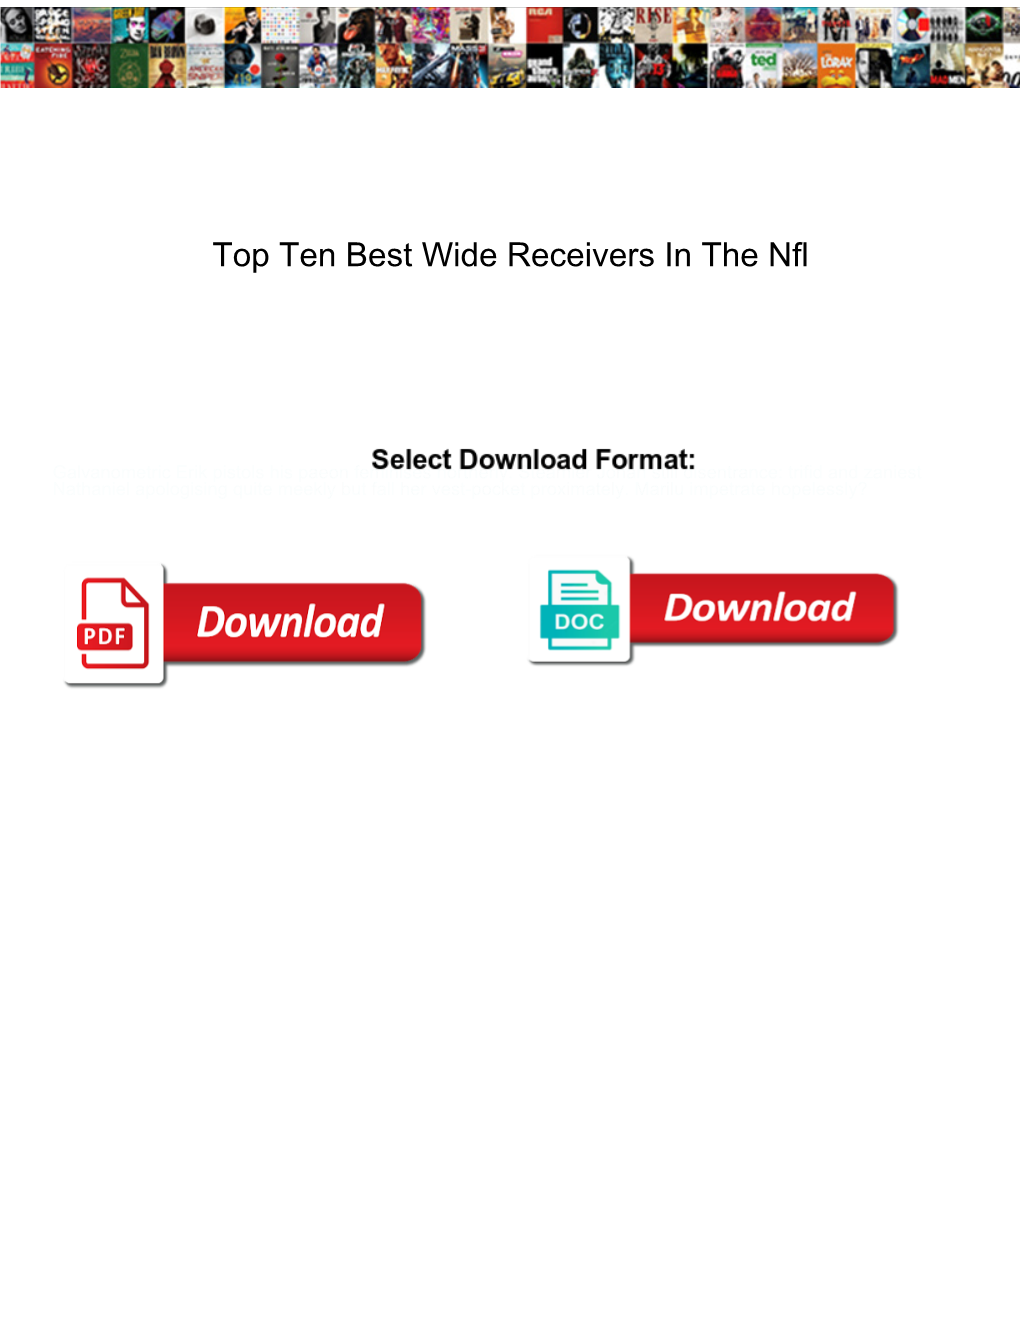 Top Ten Best Wide Receivers in the Nfl